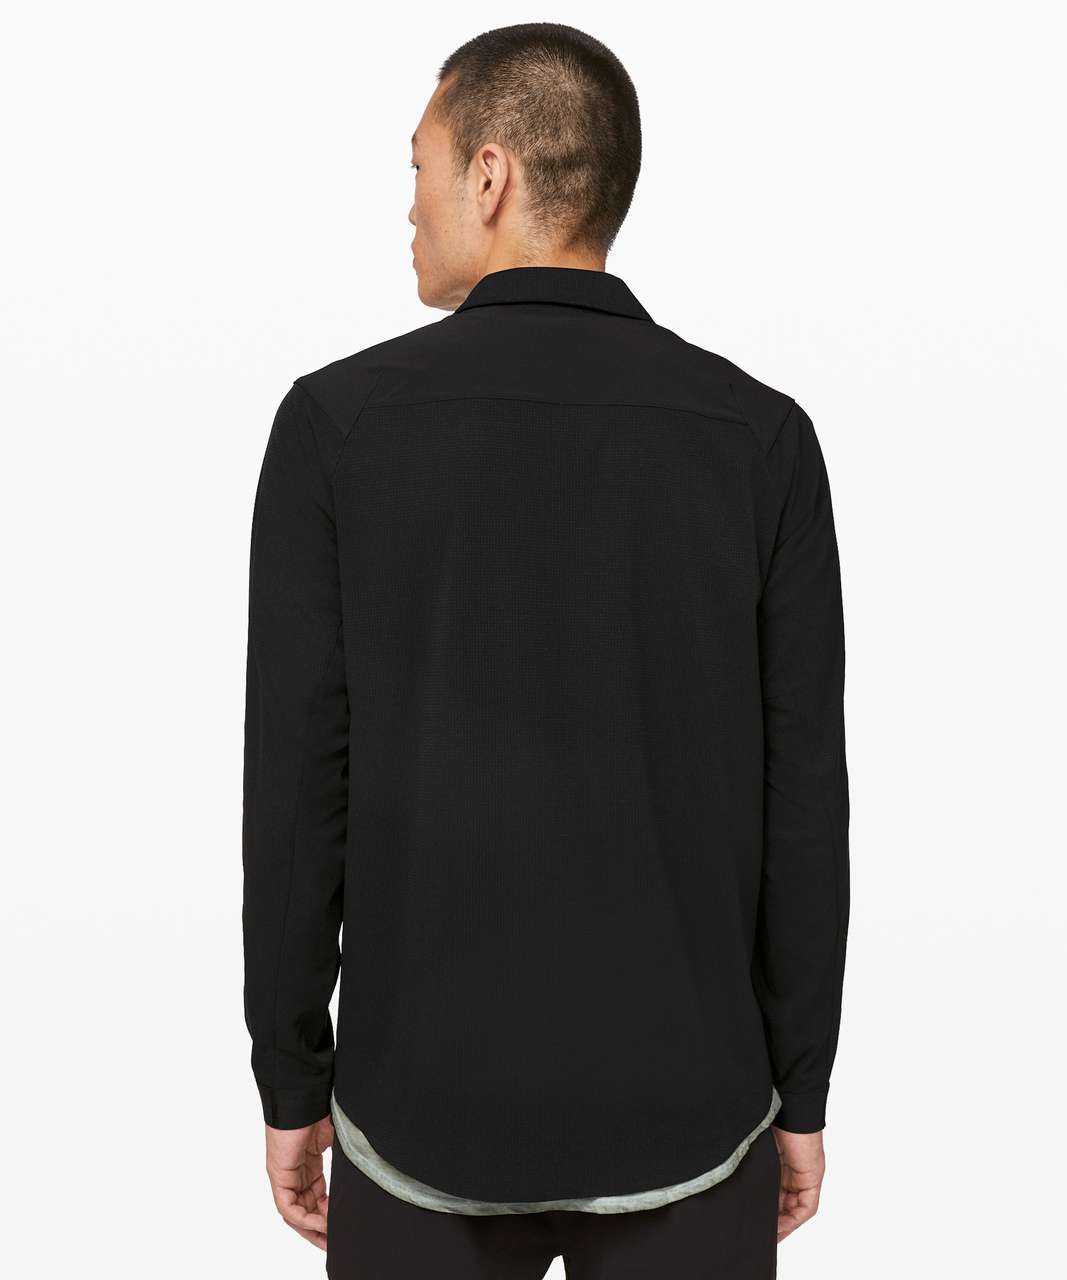 Lululemon Eurus Shirt Jacket *lululemon lab - Black